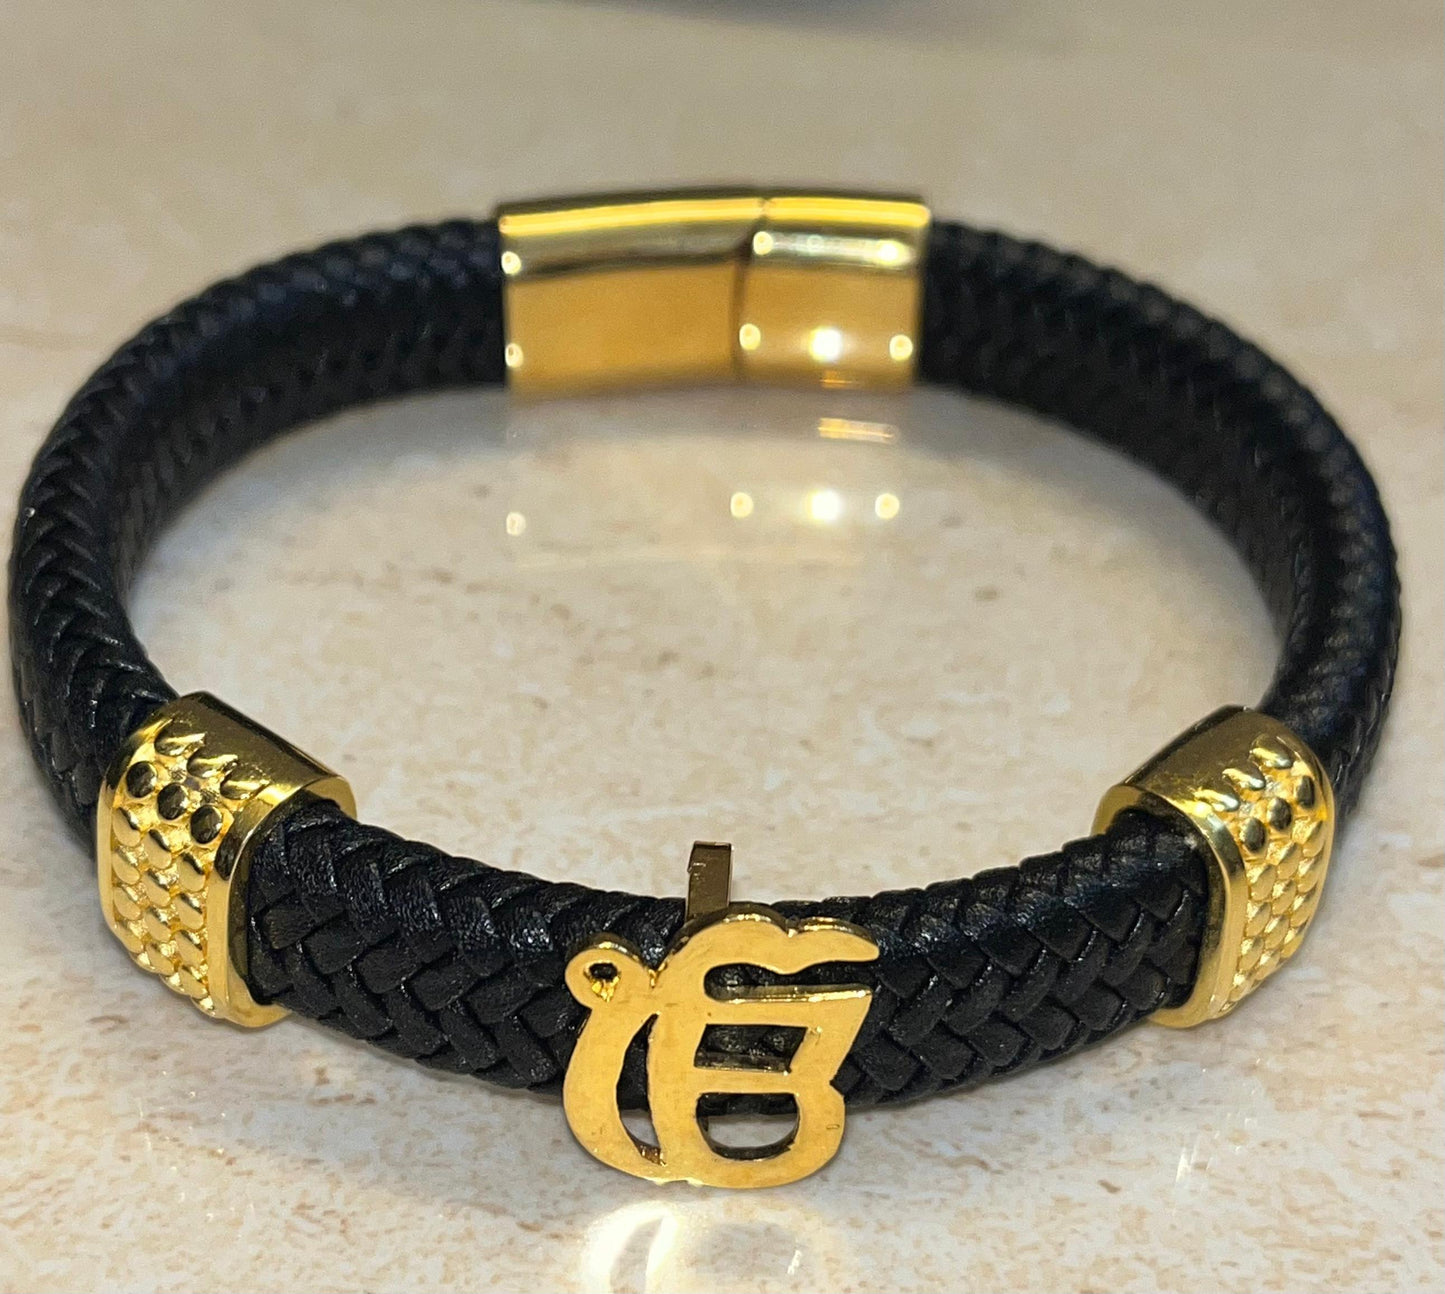 Ekonkar Bracelet in Black German Cord with Gold Plated Loops